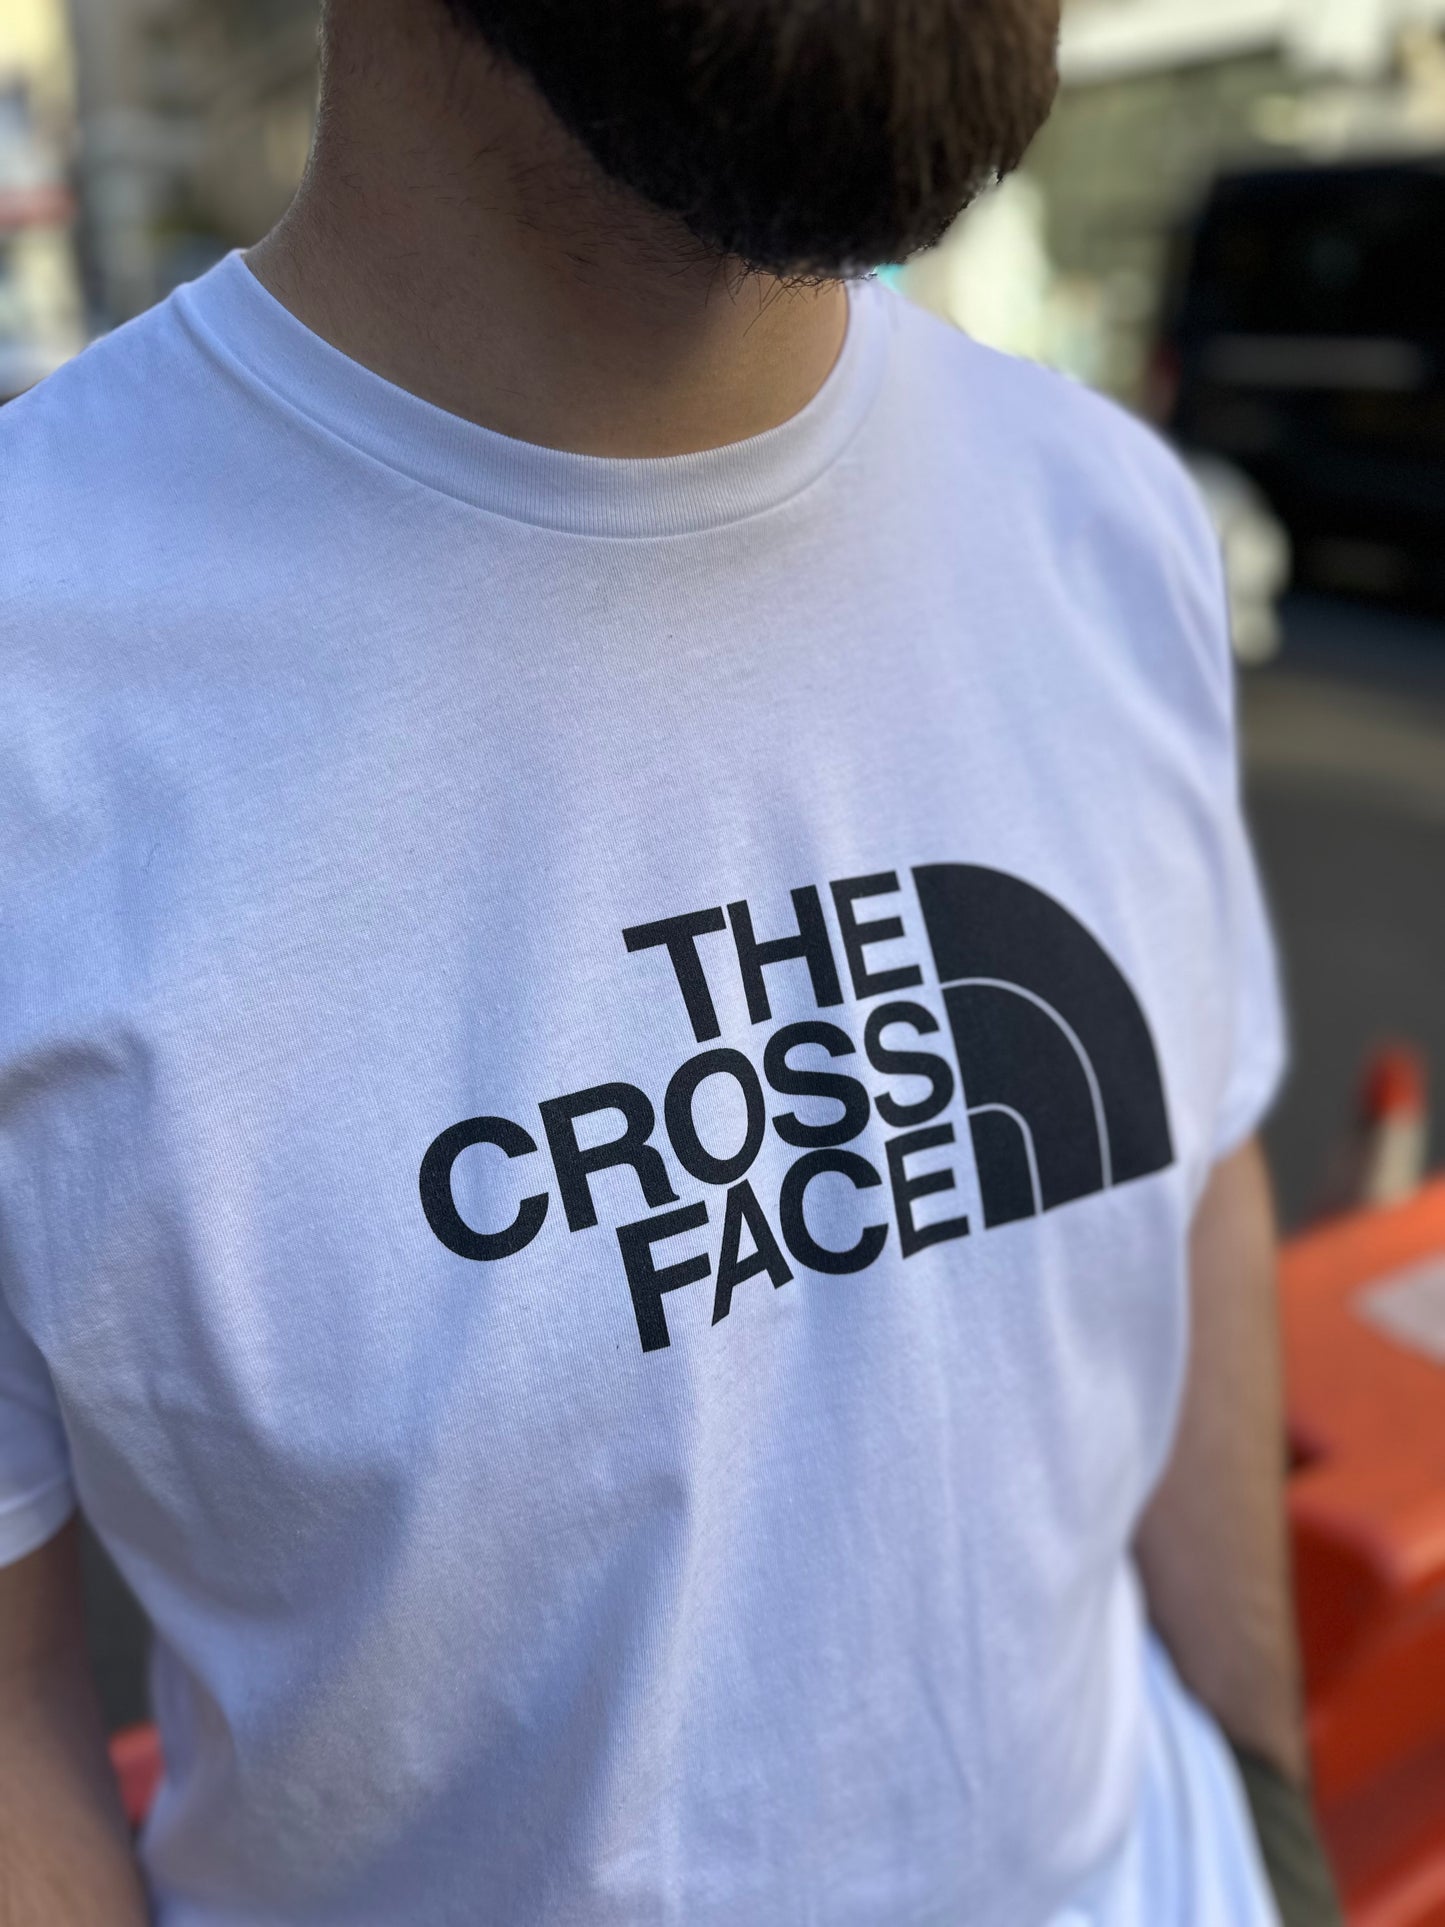 The Cross Face T-Shirt